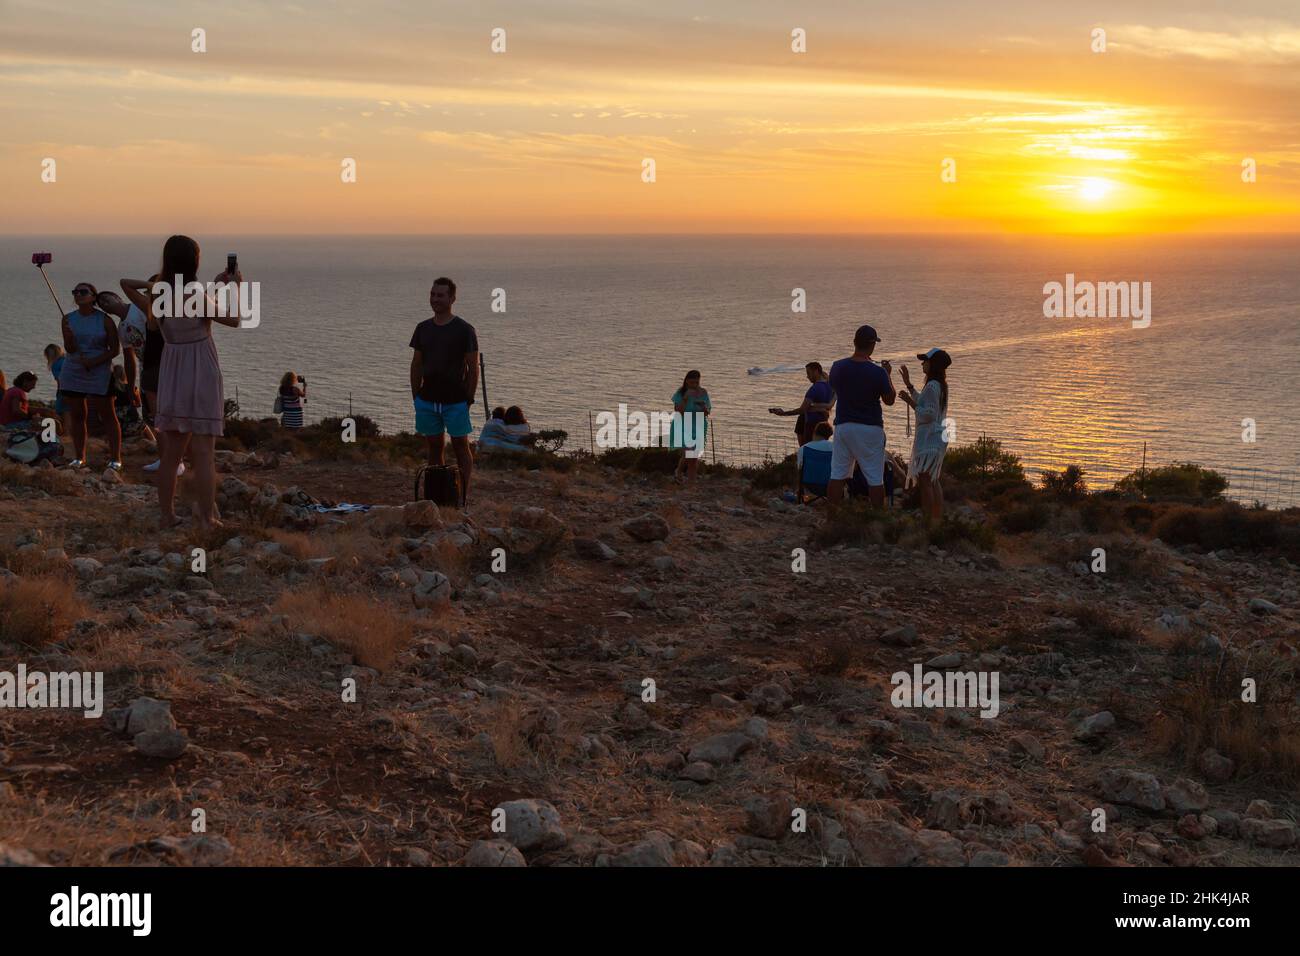 Zante, Grecia - 19 agosto 2016: I turisti scattano foto del tramonto colorato a Capo Keri. Isola greca di Zante, Mar Ionio Foto Stock